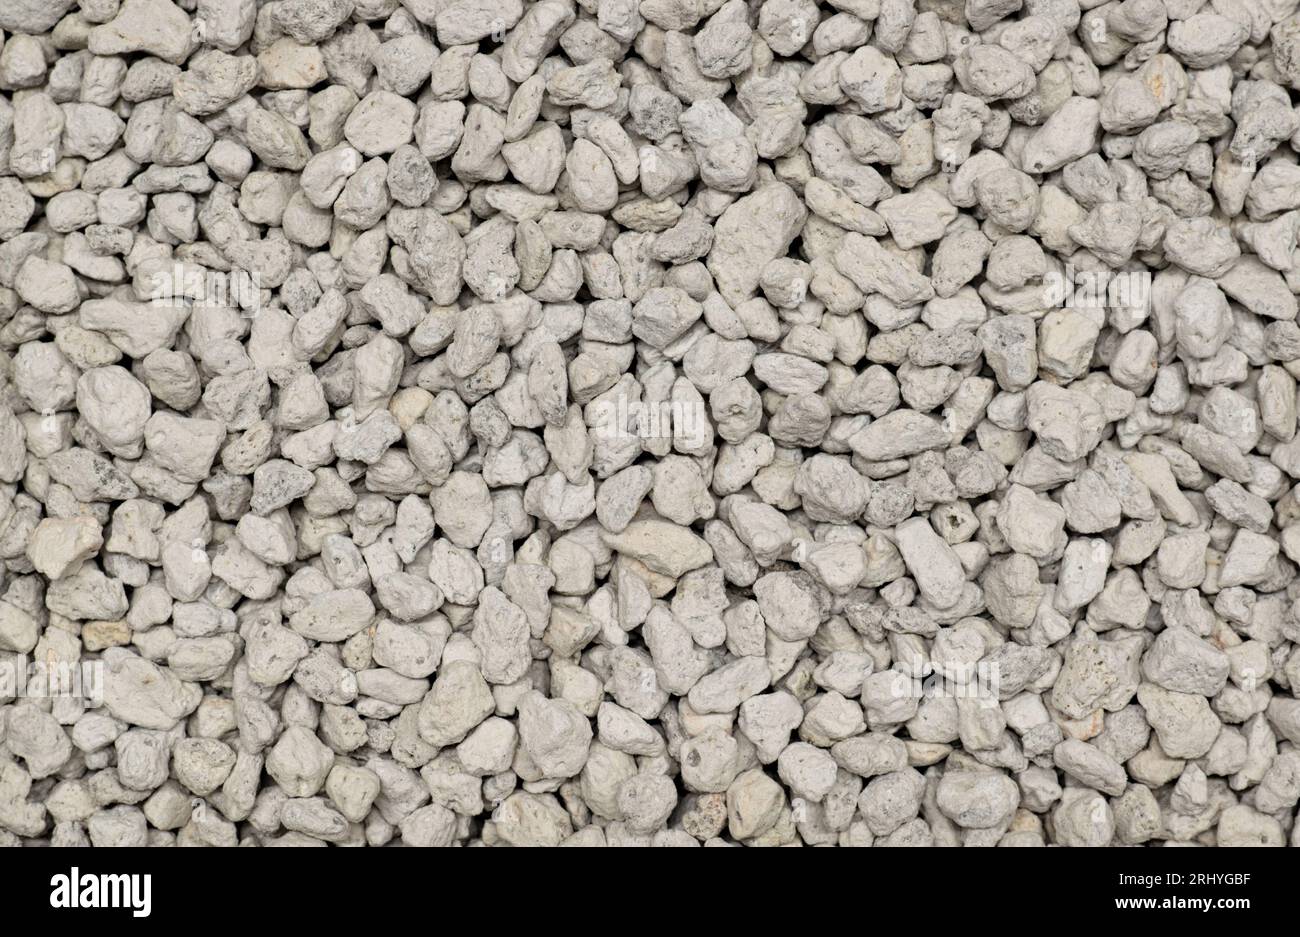 Bimssteinmineralprobe direkt von oben. Leichtes poröses vulkanisches Gestein, das für viele Anwendungen verwendet wird, einschließlich Kosmetik, Reinigung und Gartenbau. Stockfoto